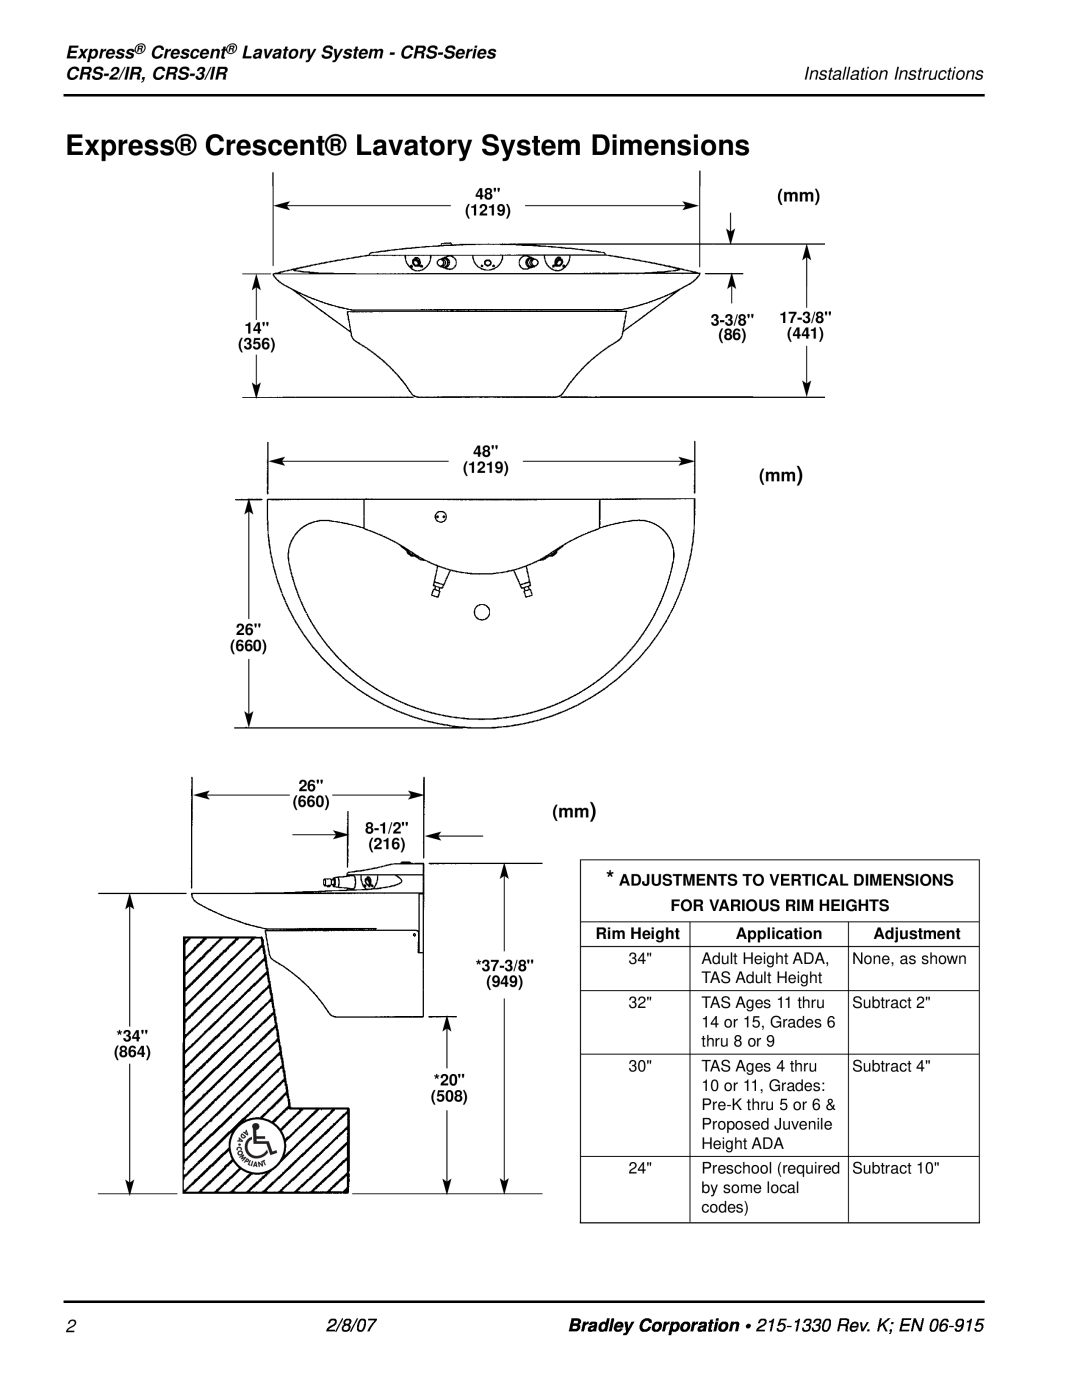 Bradley Smoker CRS-3/IR Express Crescent Lavatory System Dimensions, Express Crescent Lavatory System - CRS-Series, mm mm 